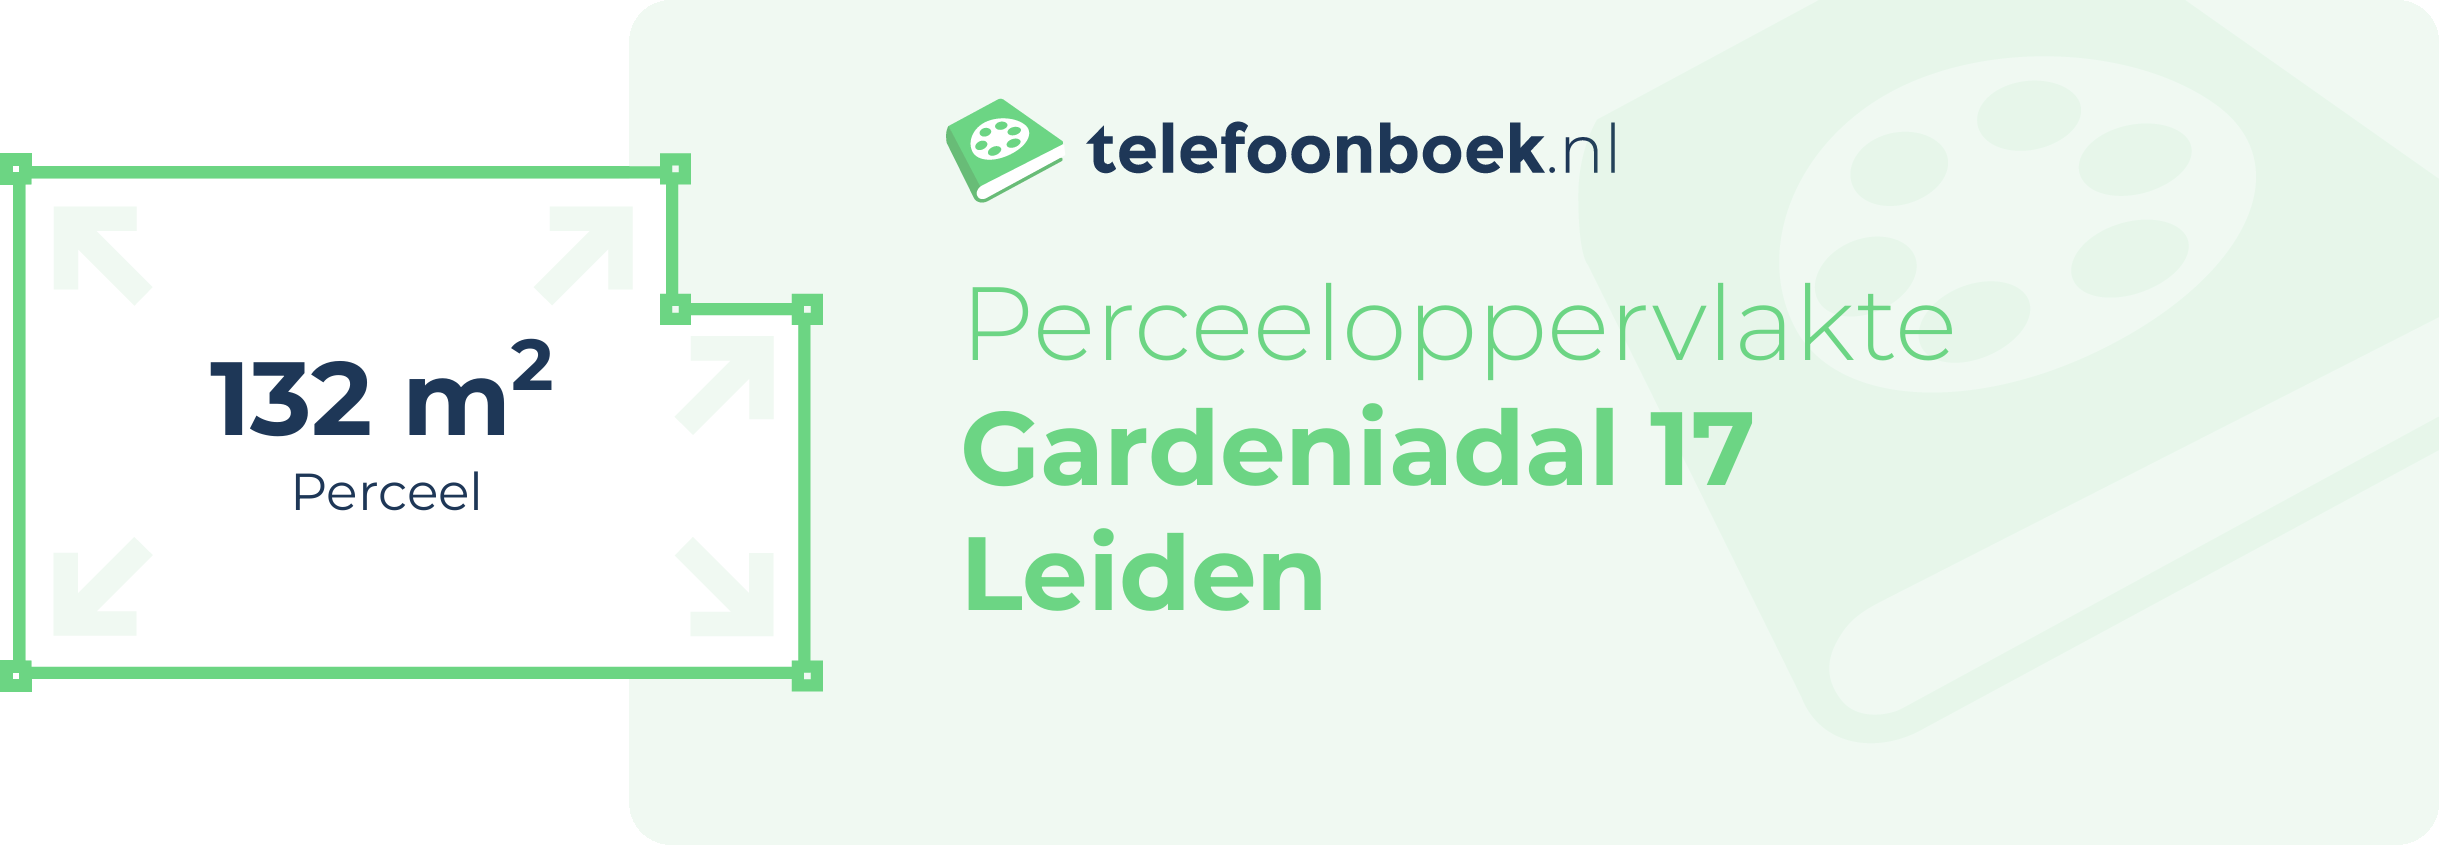 Perceeloppervlakte Gardeniadal 17 Leiden